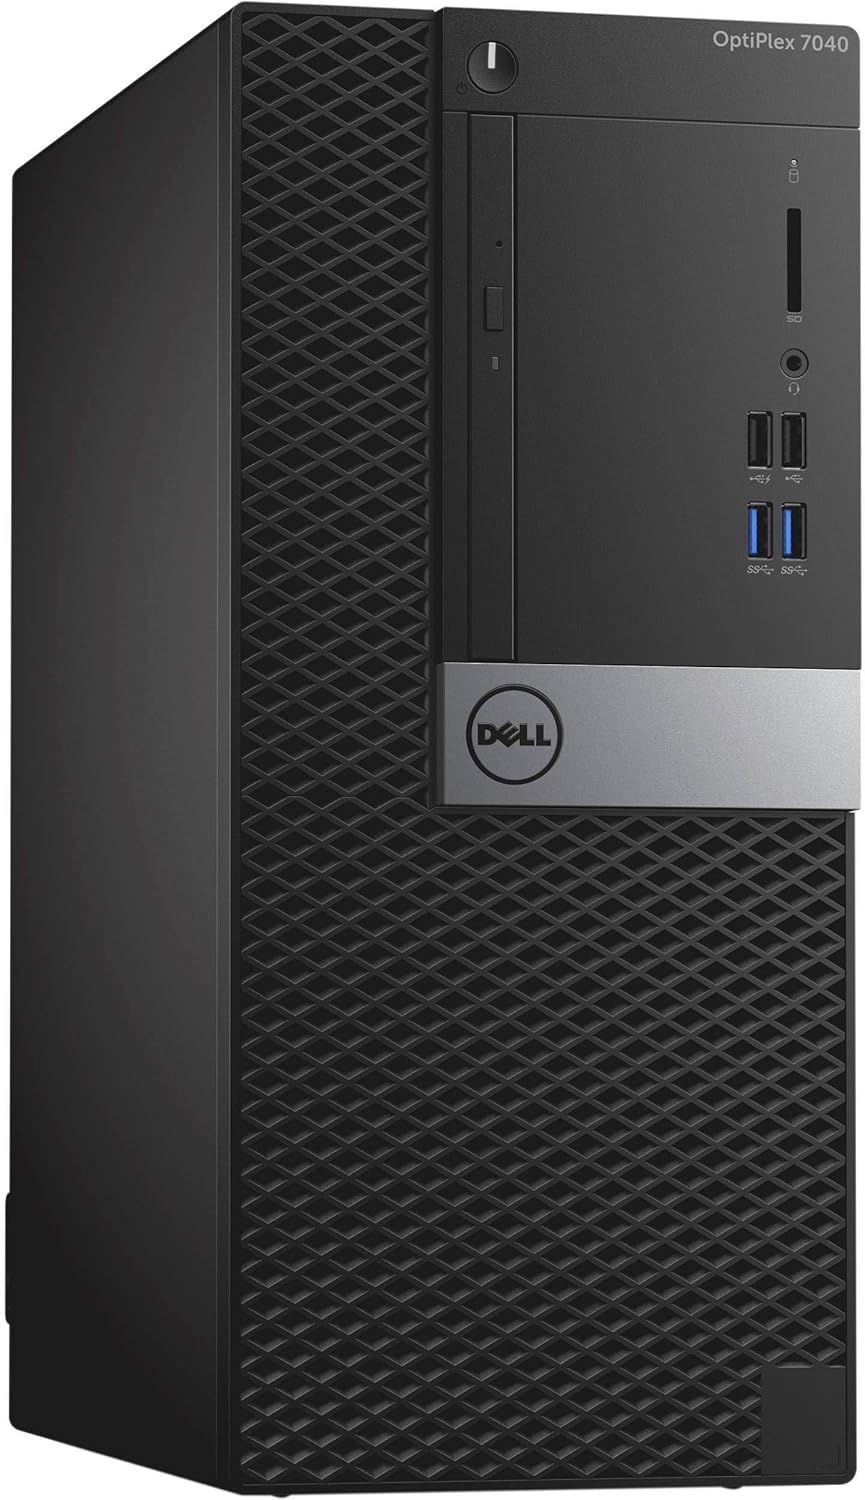 Dell Optiplex 7040 Mini Tower Desktop PC, Intel Core i5-6500, 500GB HDD, 4GB RAM, ‎‎Intel Integrated Graphics, Linux - Black